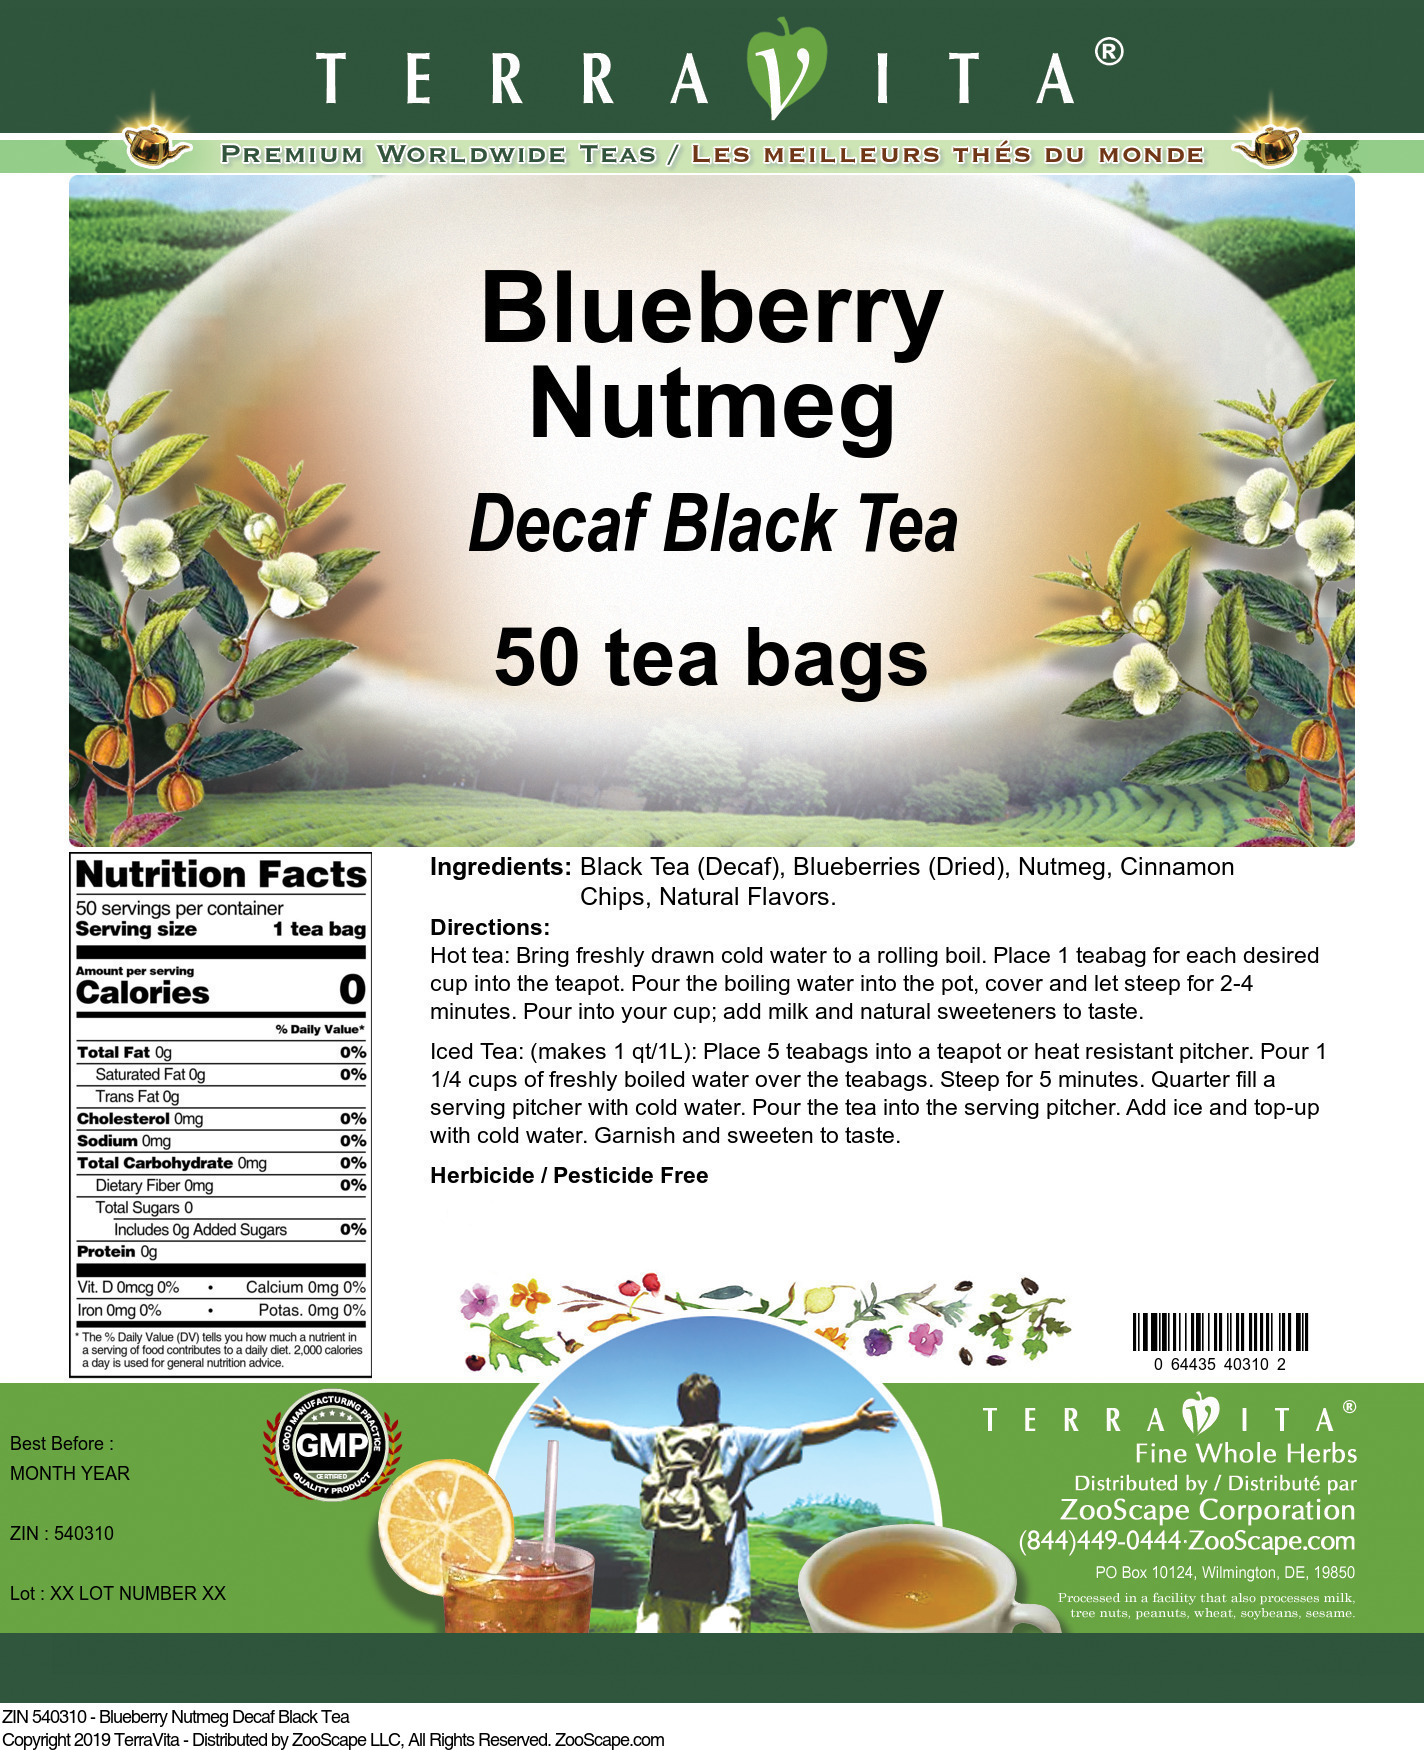 Blueberry Nutmeg Decaf Black Tea - Label